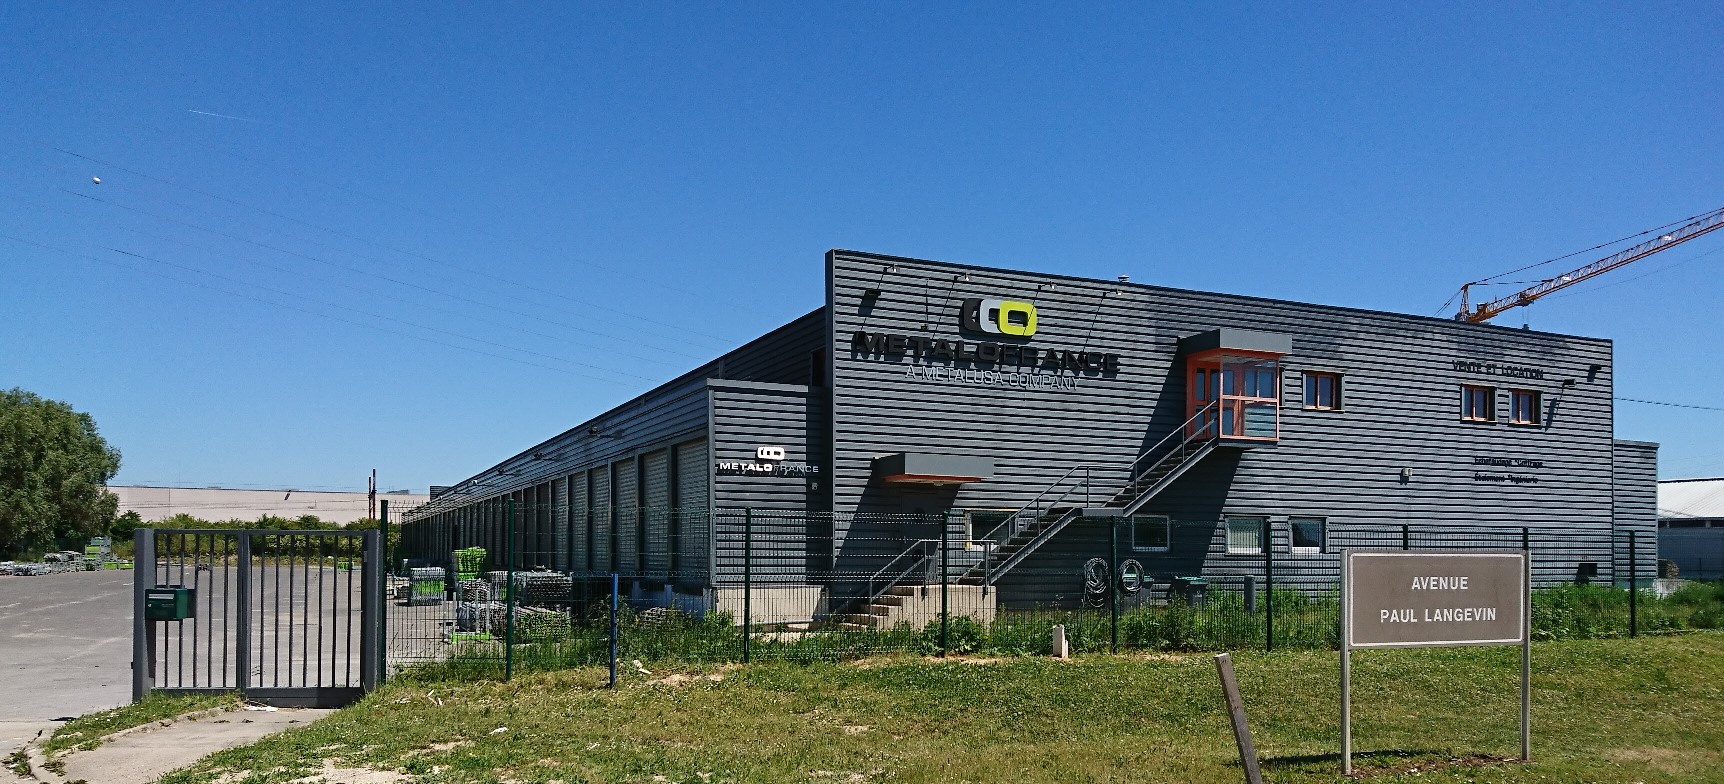 METALOFRANCE, empresa filial de Metalusa, invierte un millón y medio de euros en las nuevas instalaciones de Moissy-Cramayel en la región de la Isla de Francia